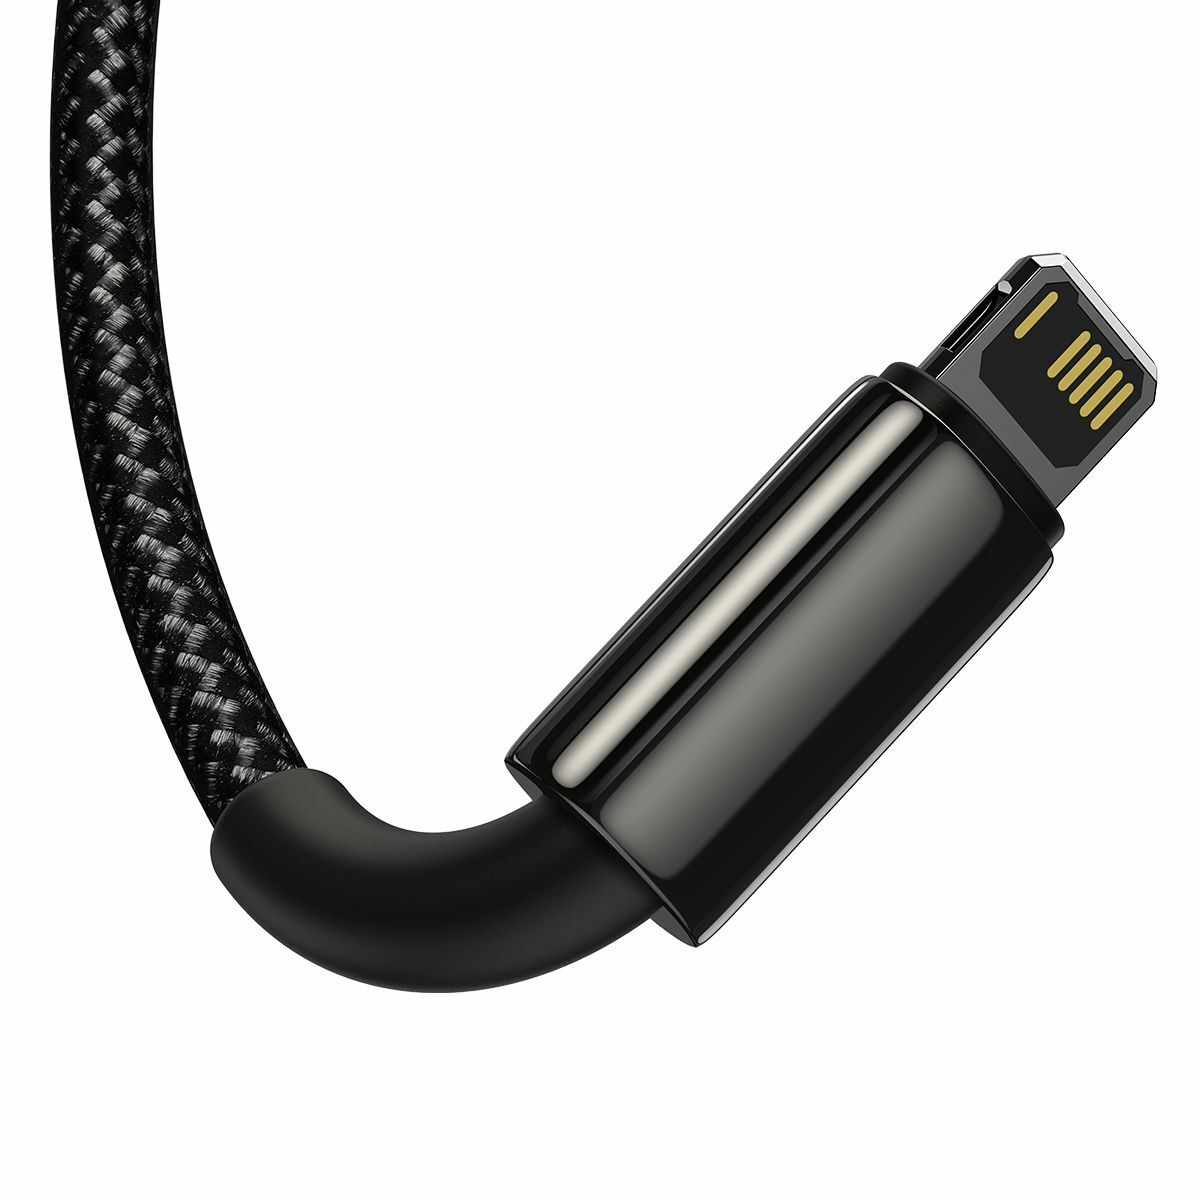 Kép 5/14 - Baseus Univerzális kábel, Tungsten 3-in-1 USB töltőhöz (Type C / Lightning / micro USB) 3.5A 1.5m, fekete (CAMLTWJ-01)